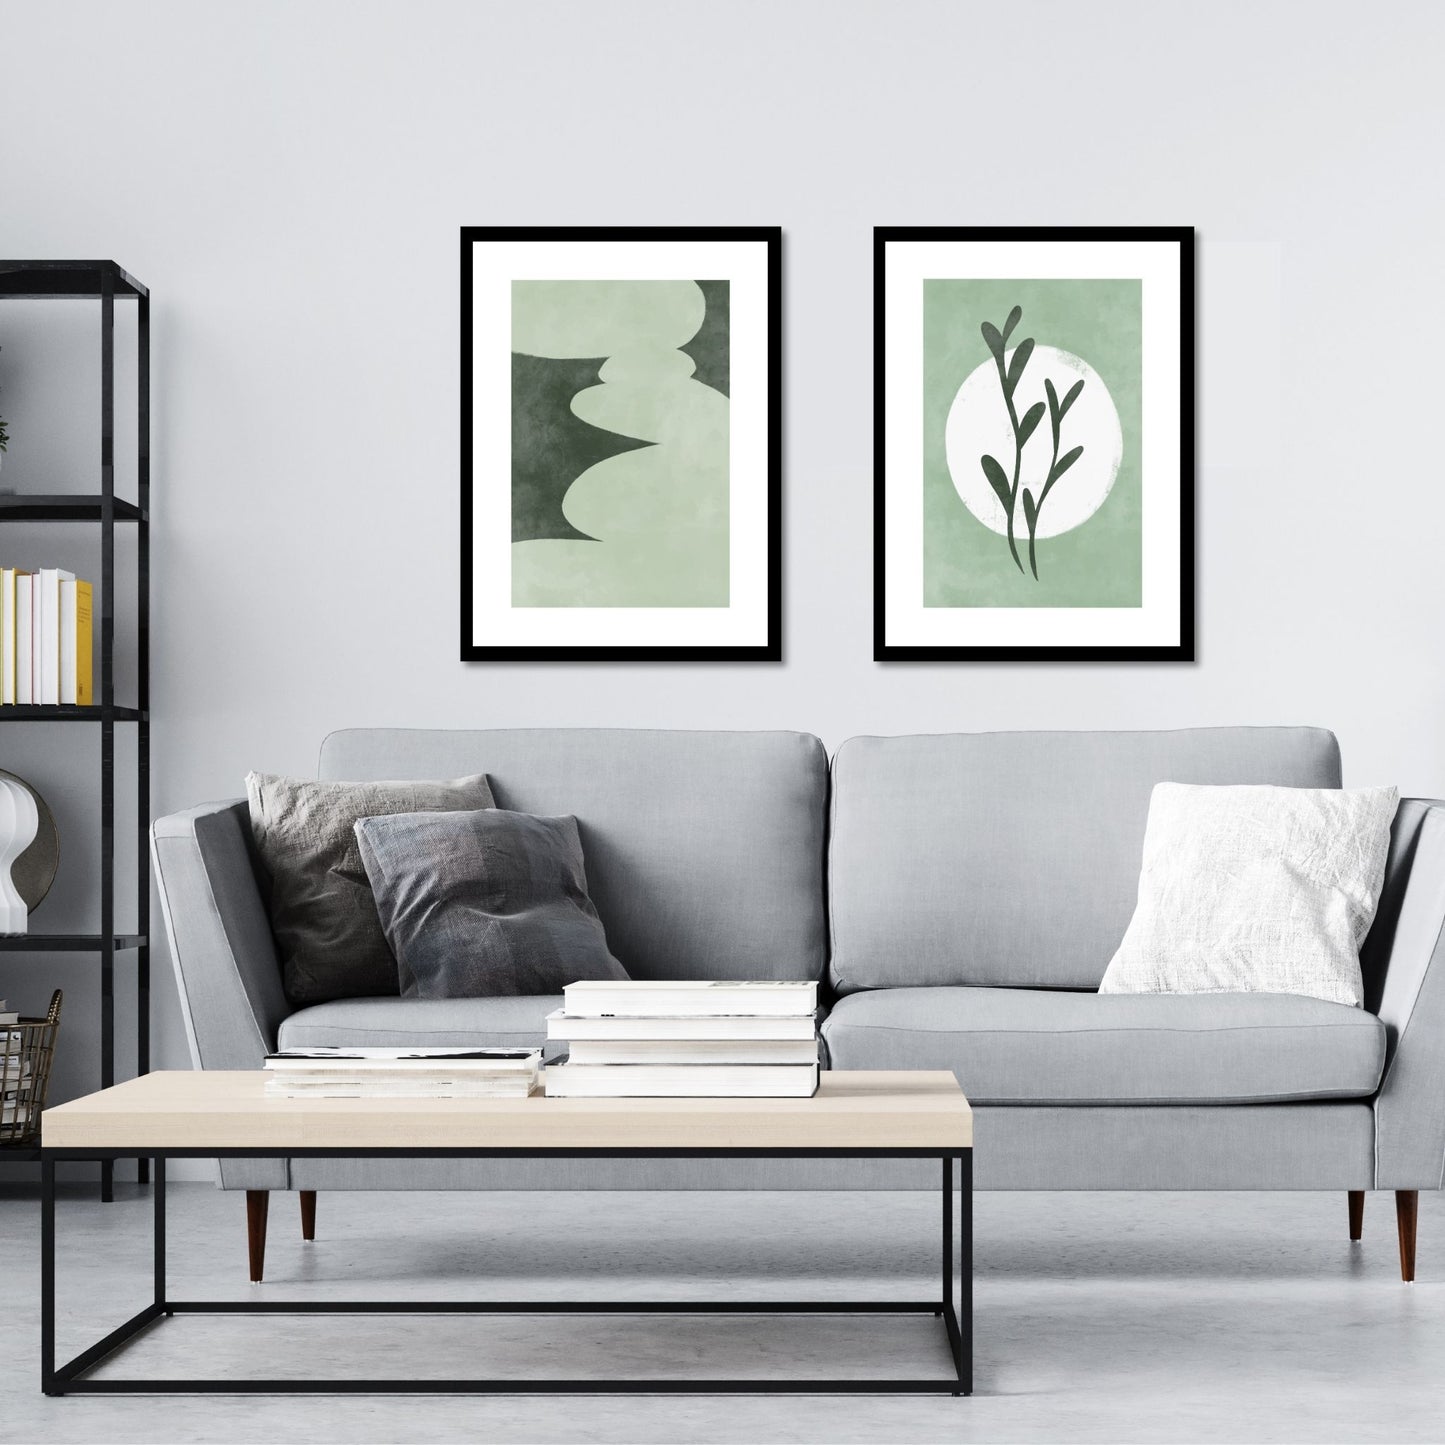 Green Abstract plakat. Med sine beroligende grønne toner og sofistikerte design, tilfører denne plakaten en følelse av ro og harmoni til ethvert rom. Illustrasjonen viser plakat No13 og No14 i sort ramme på en vegg over en sofa.